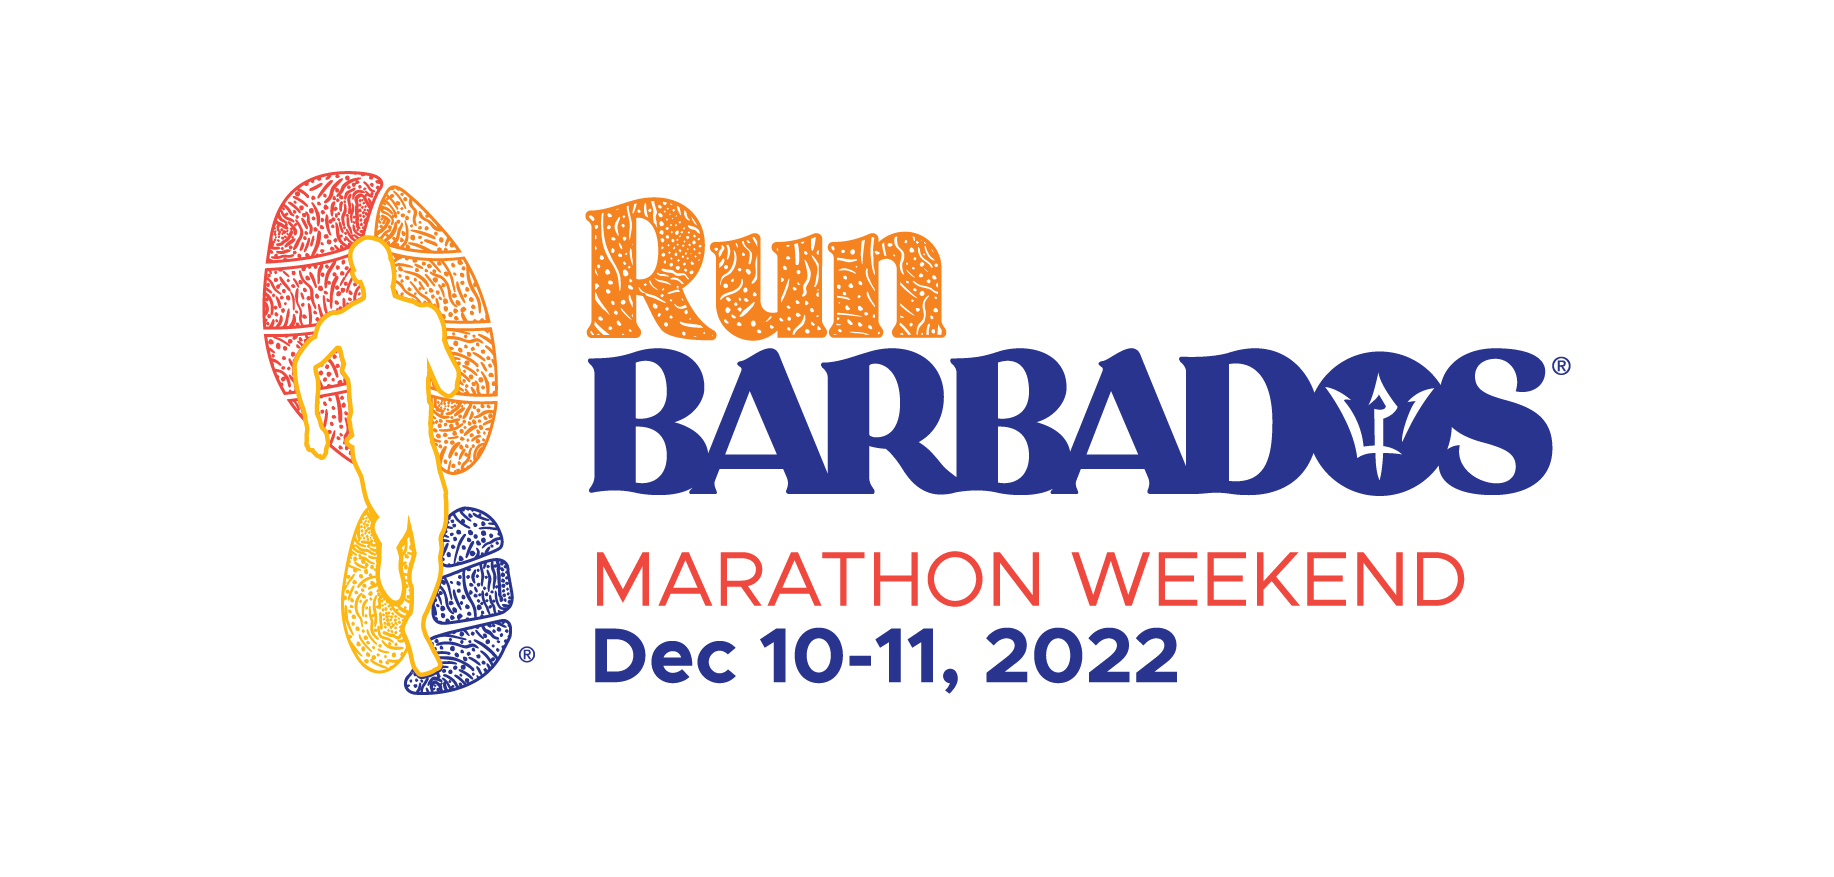 Laufen Sie Barbados - Marathon-Wochenende